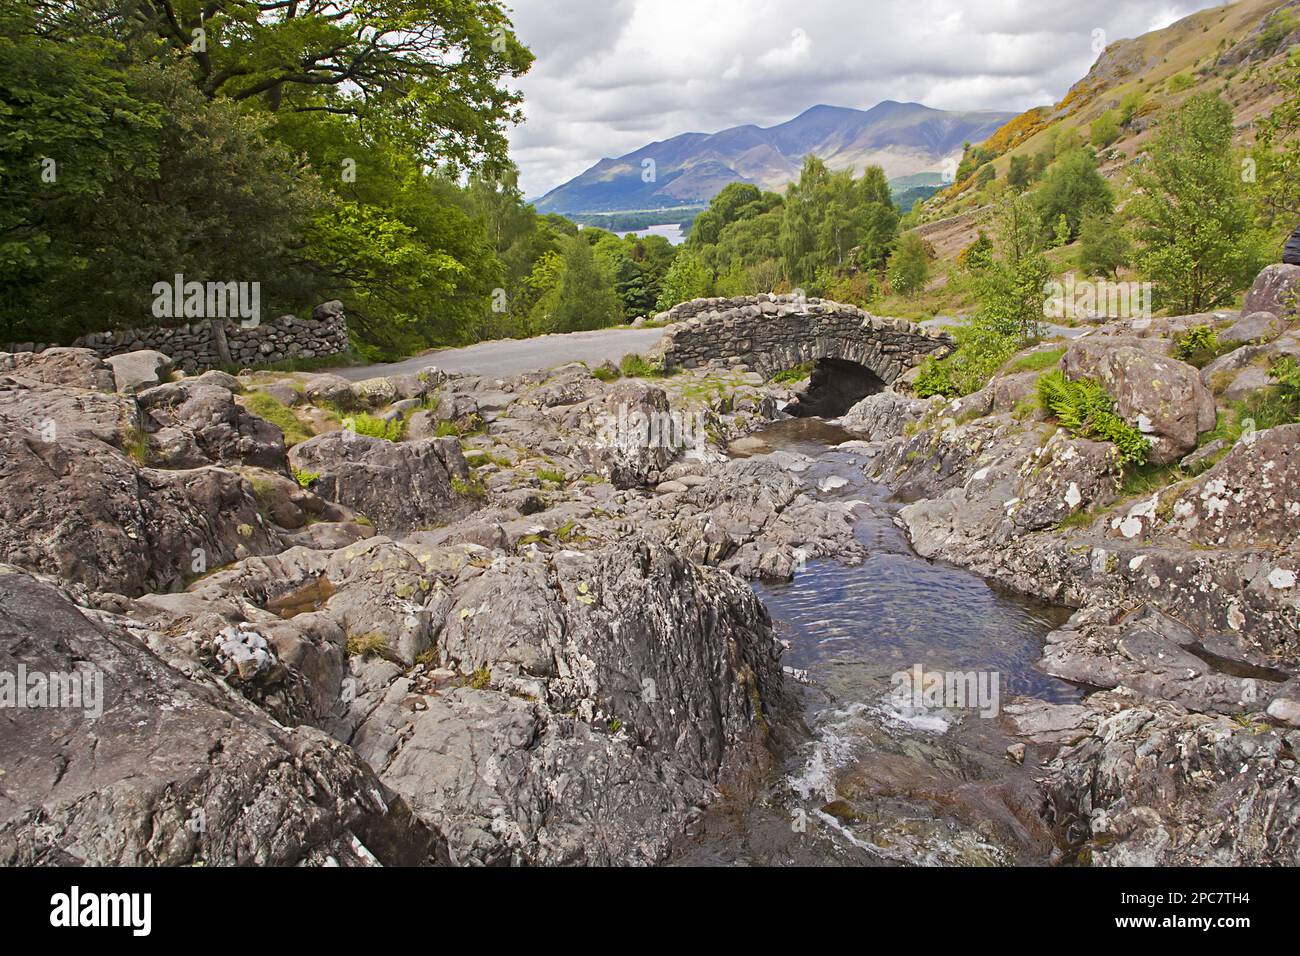 Ruisseau Rocky et pont en pierre, pont Ashness, Keswick, Lake District, Cumbria, Angleterre, Royaume-Uni Banque D'Images